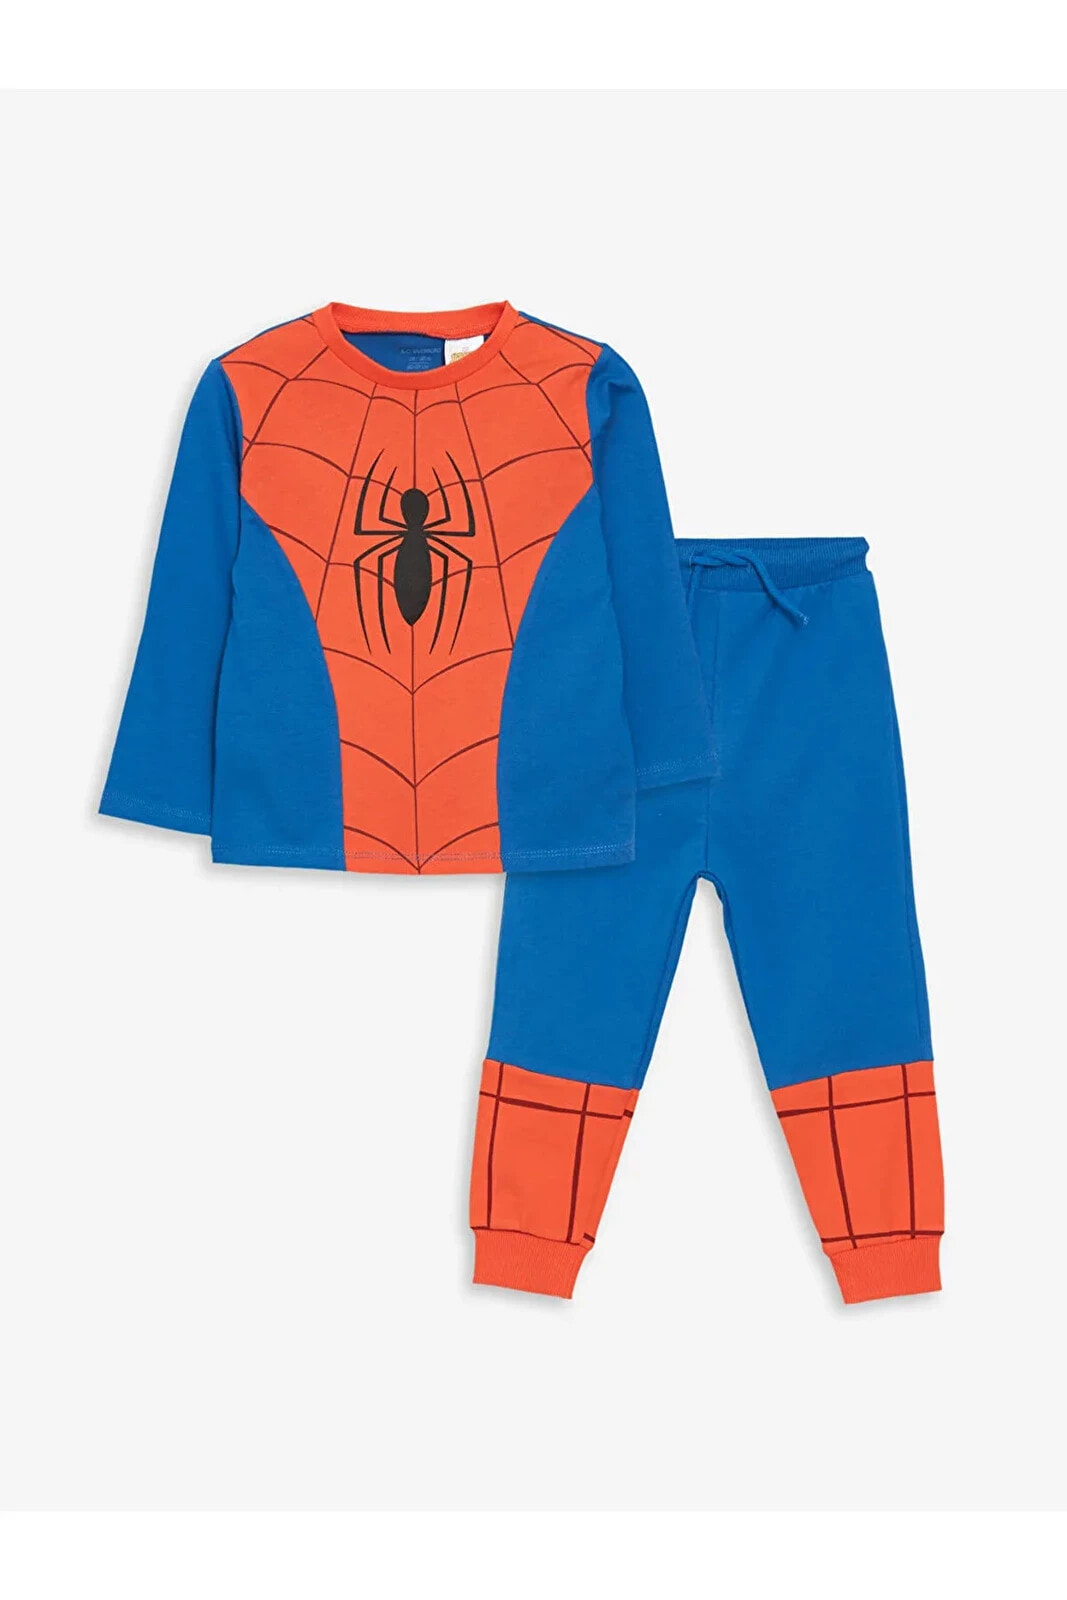 LCW baby Bisiklet Yaka Spiderman Baskılı Erkek Bebek Tişört ve Eşofman Alt 2'li Takım